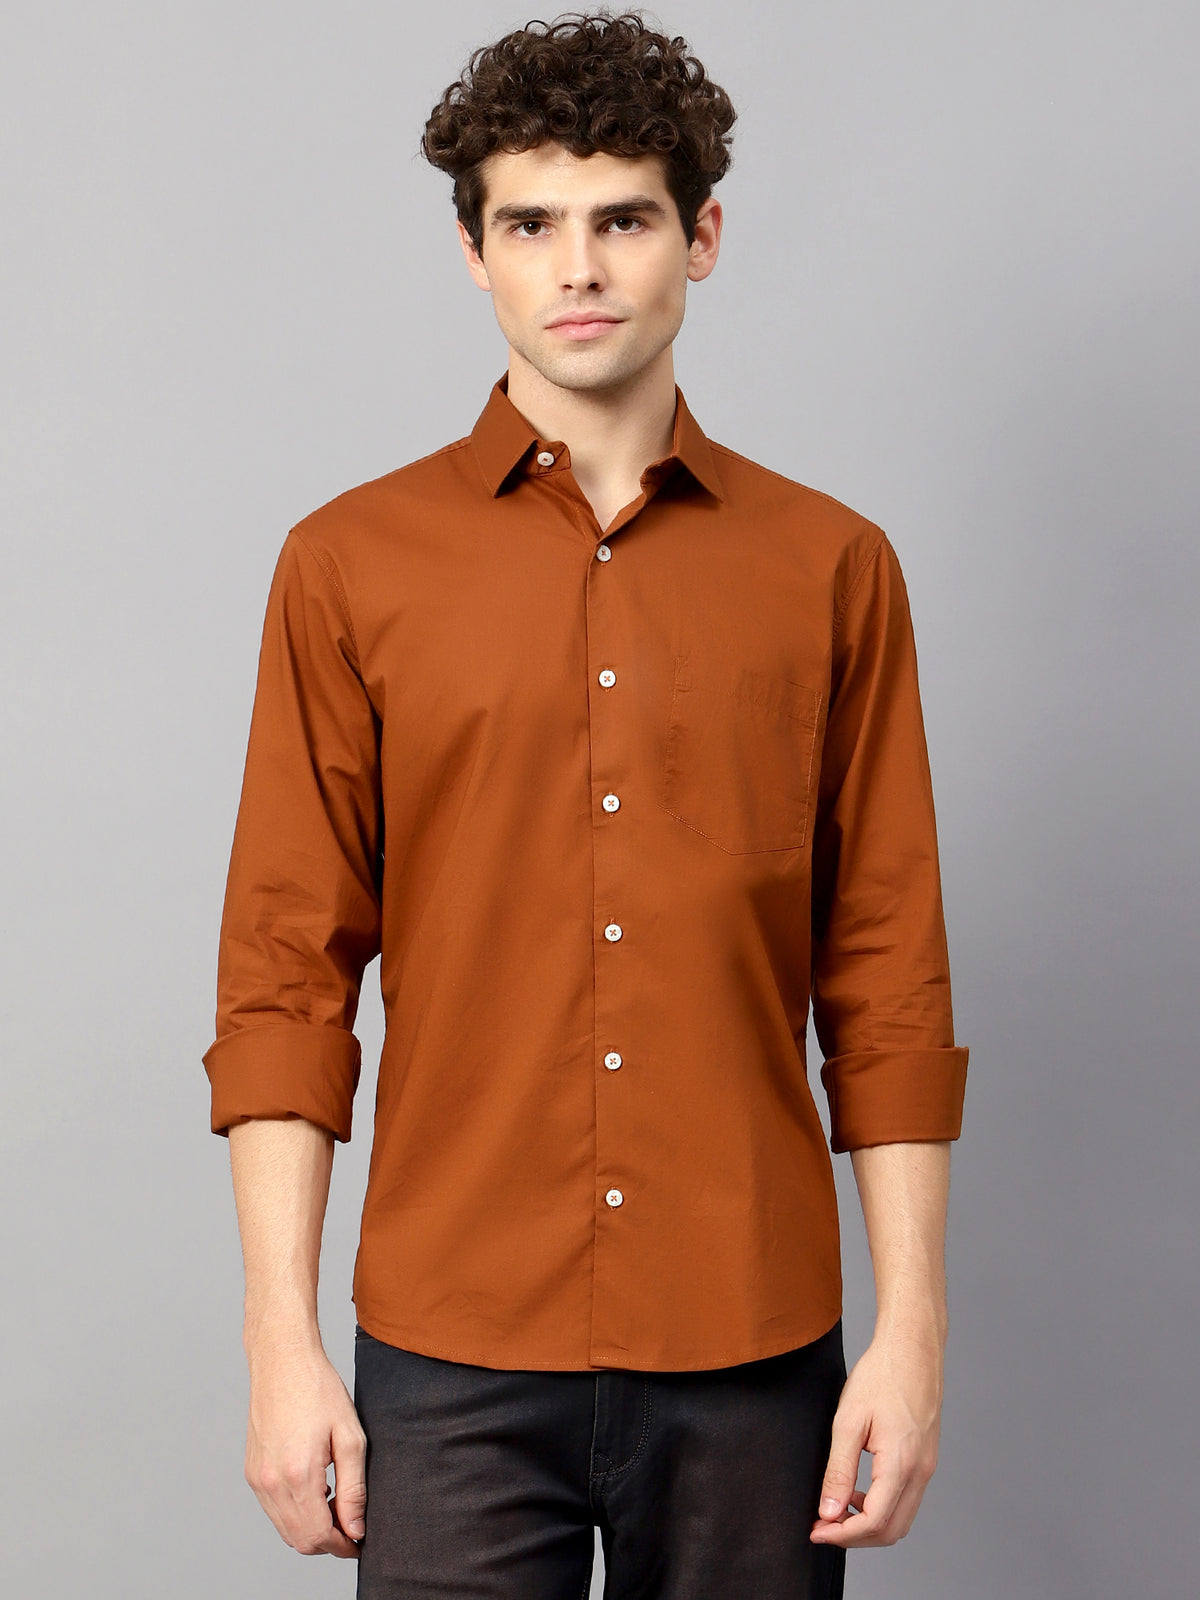 Premium Cotton Lycra Rust Athleisure Shirts